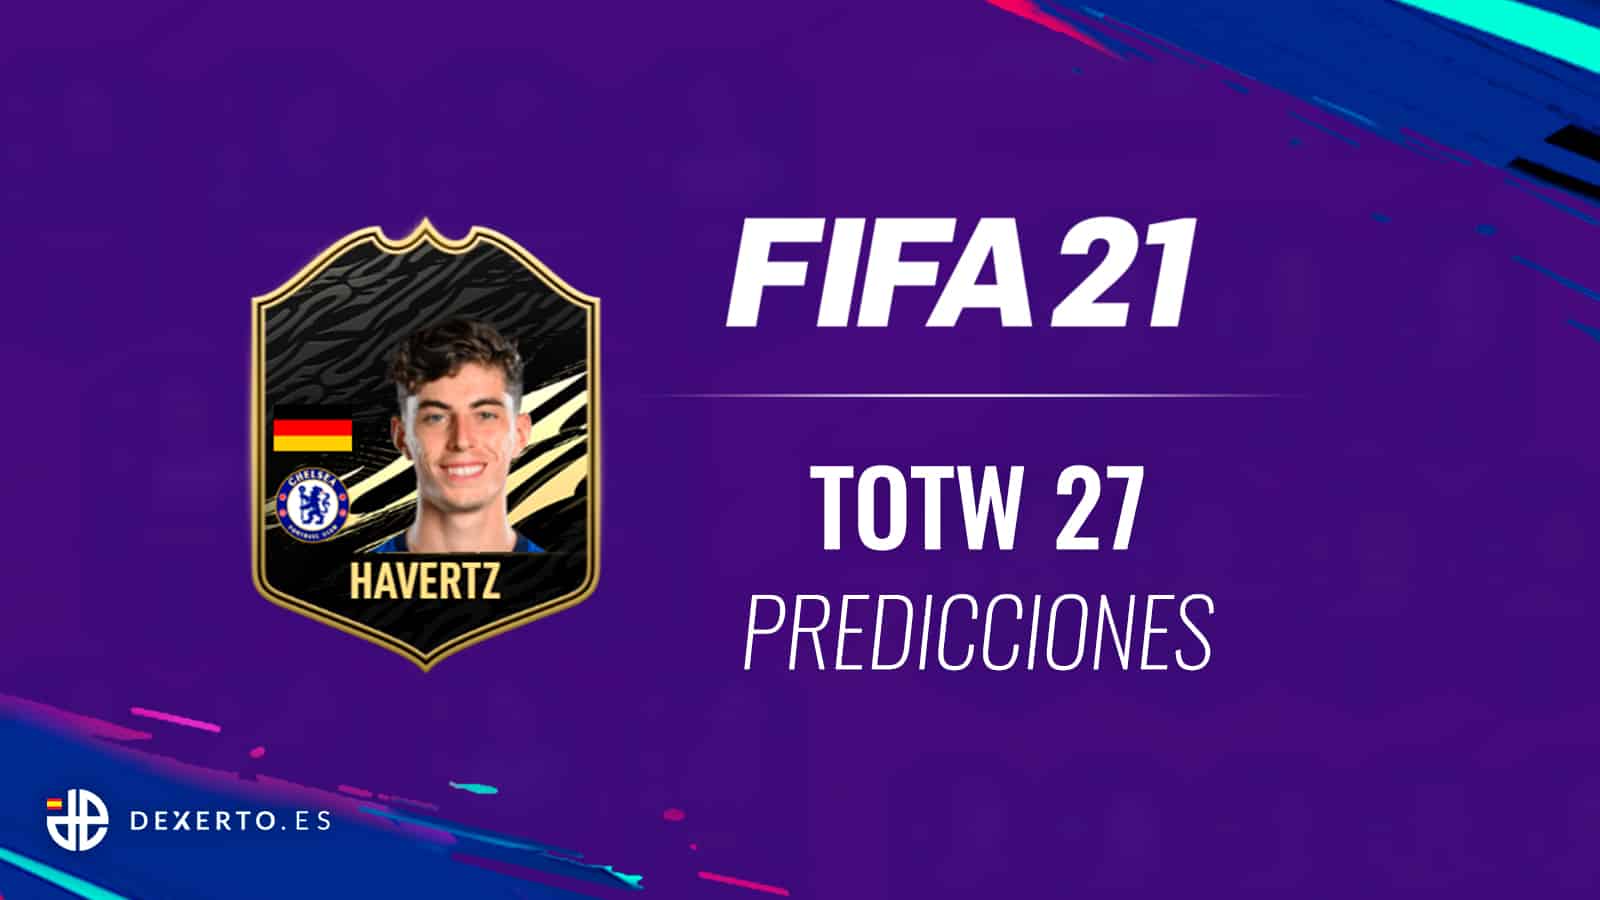 FIFA 21 TOTW predicciones